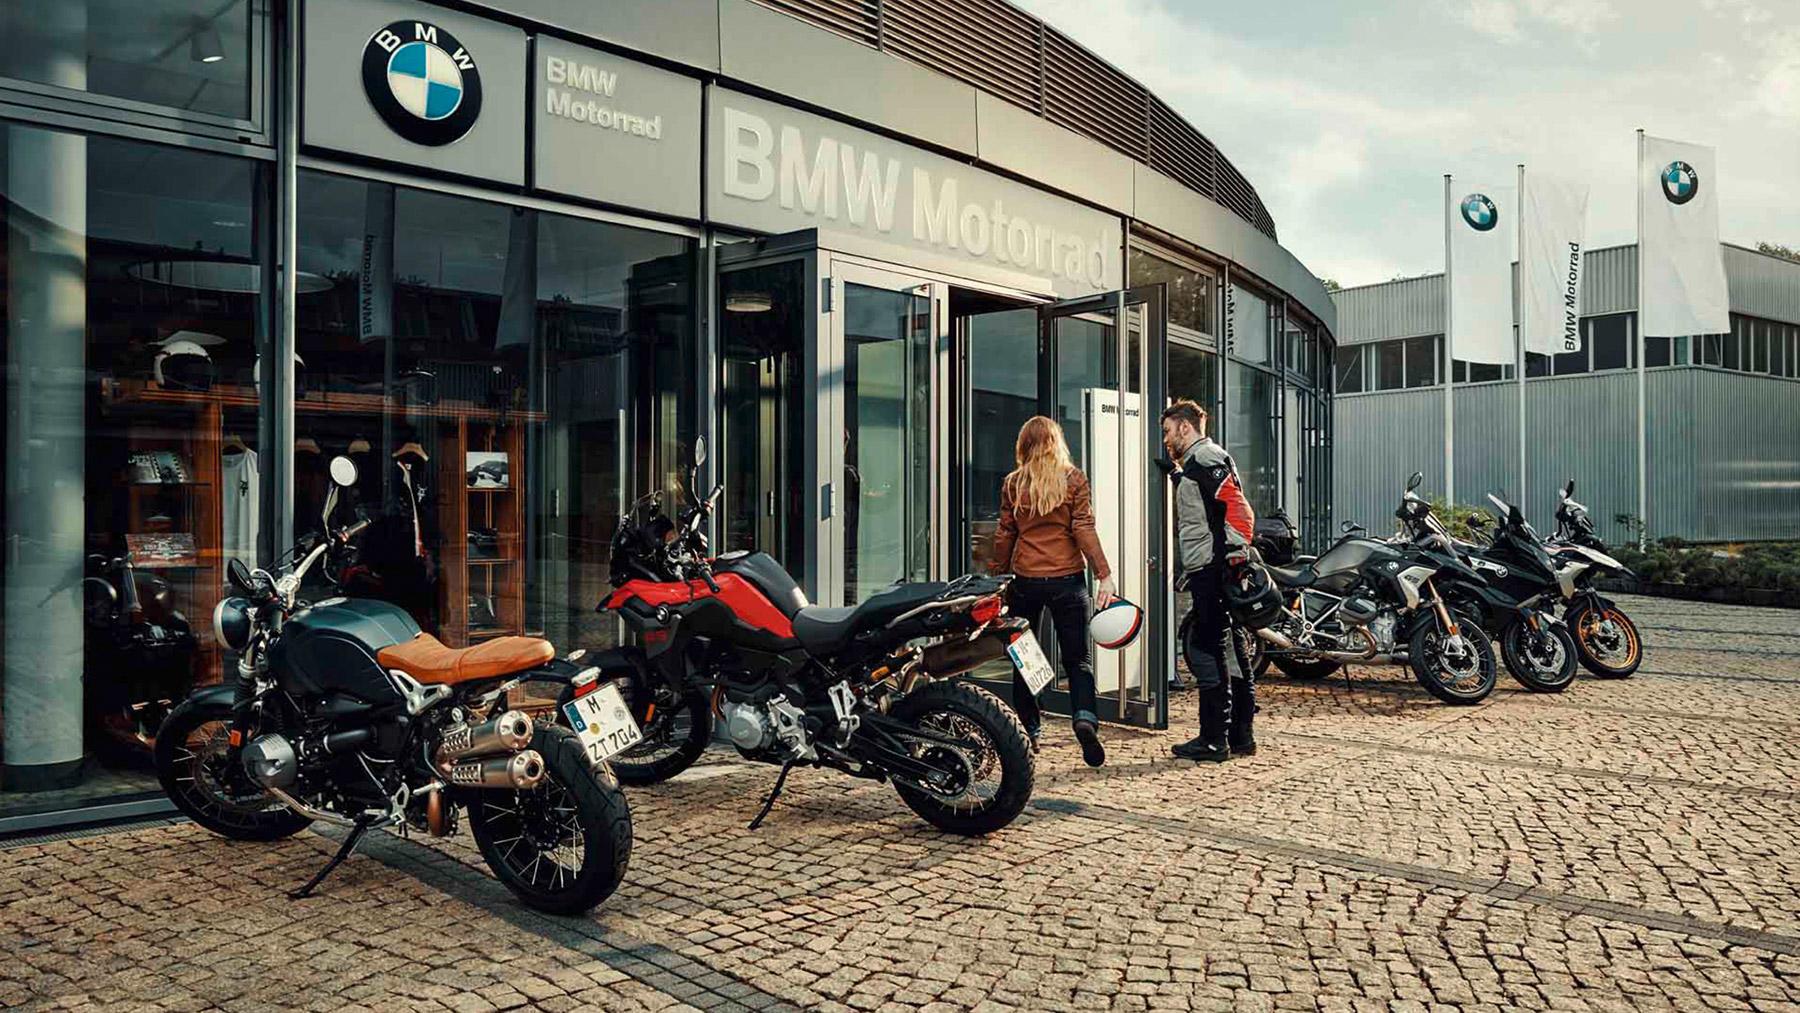 La marca BMW obtiene el 1er lugar del segmento Premium en el "Índice de Satisfacción de Servicio al Cliente